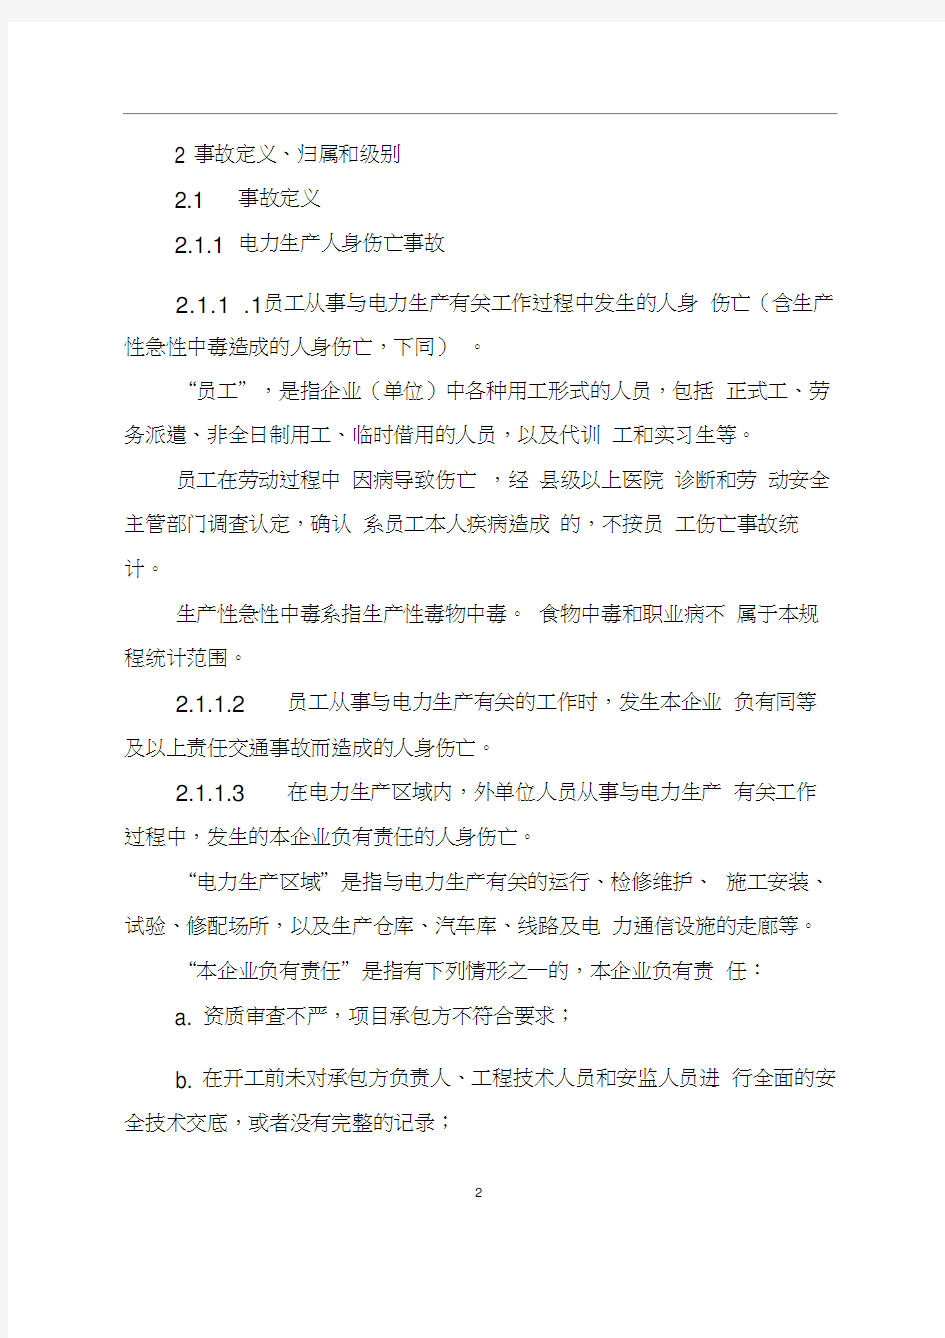 中国大唐集团公司电力生产安全事故调查规程(2012版).doc